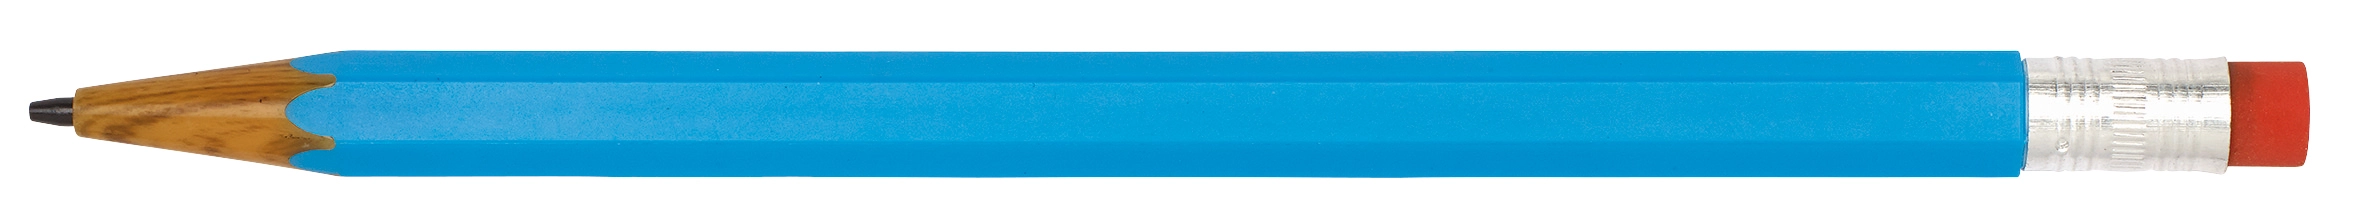 Ołówek automatyczny LOOKALIKE, niebieski 56-1101192 niebieski